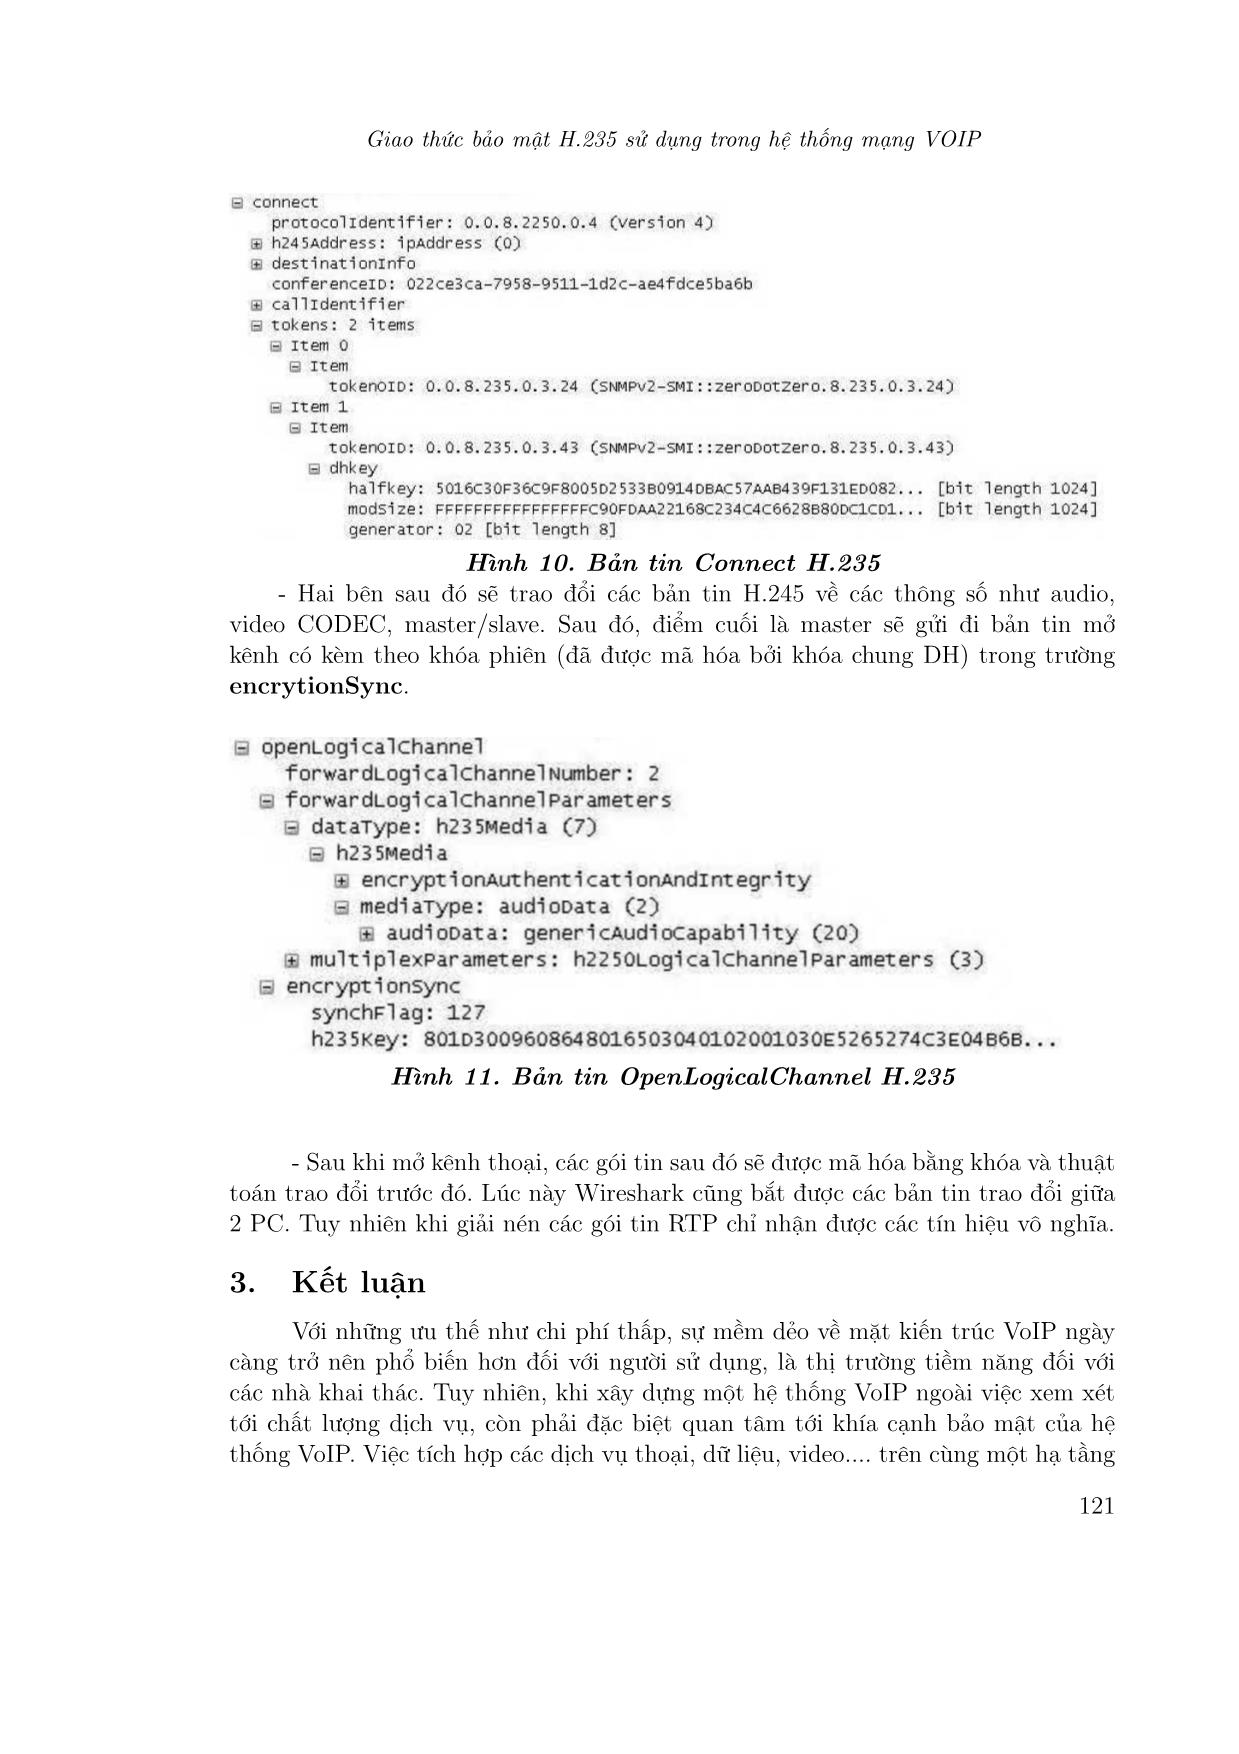 Giao thức bảo mật H.235 sử dụng trong hệ thống mạng voip trang 10